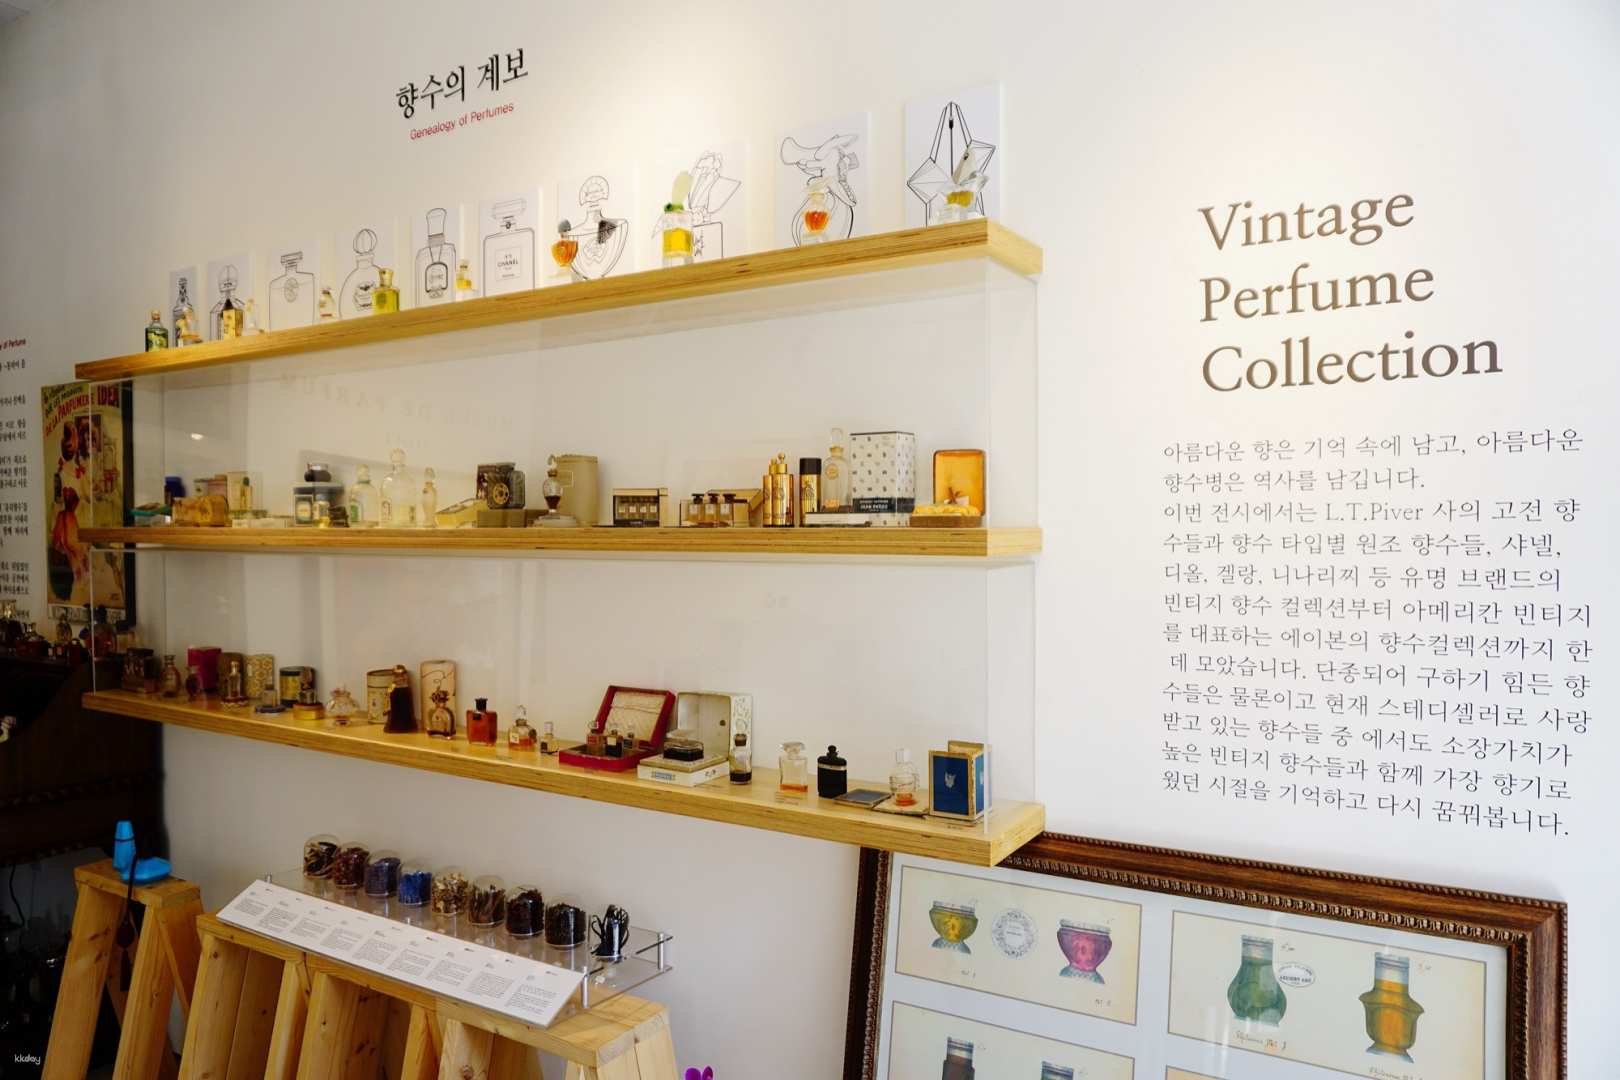 韓國-GN perfume studio| 自製香水DIY 體驗